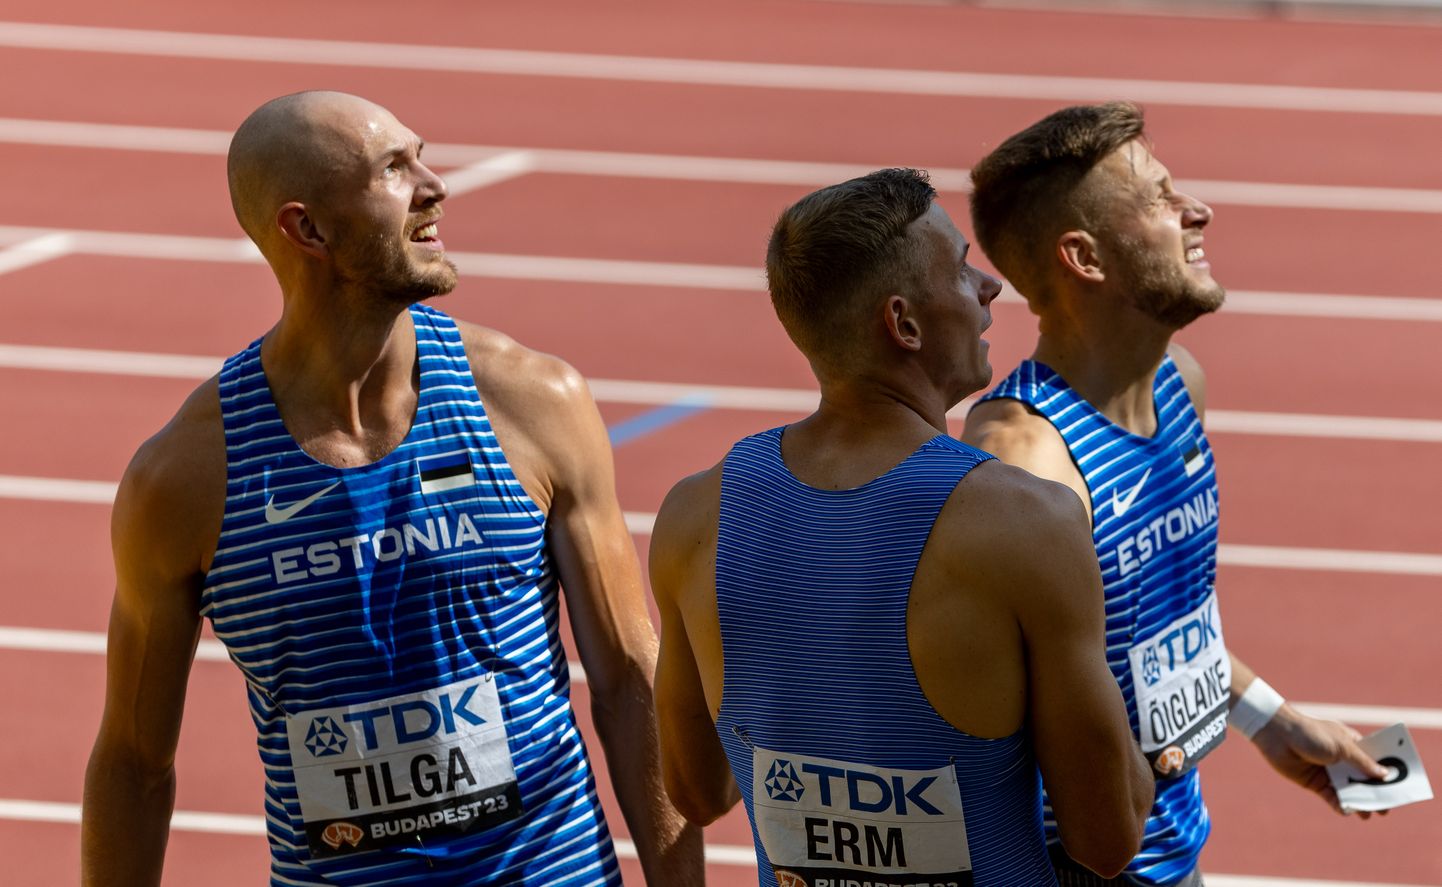 Eesti kümnevõistlejad olid Budapesti MMil heas hoos. Vasakult: Karel Tilga, Johannes Erm ja Janek Õiglane.